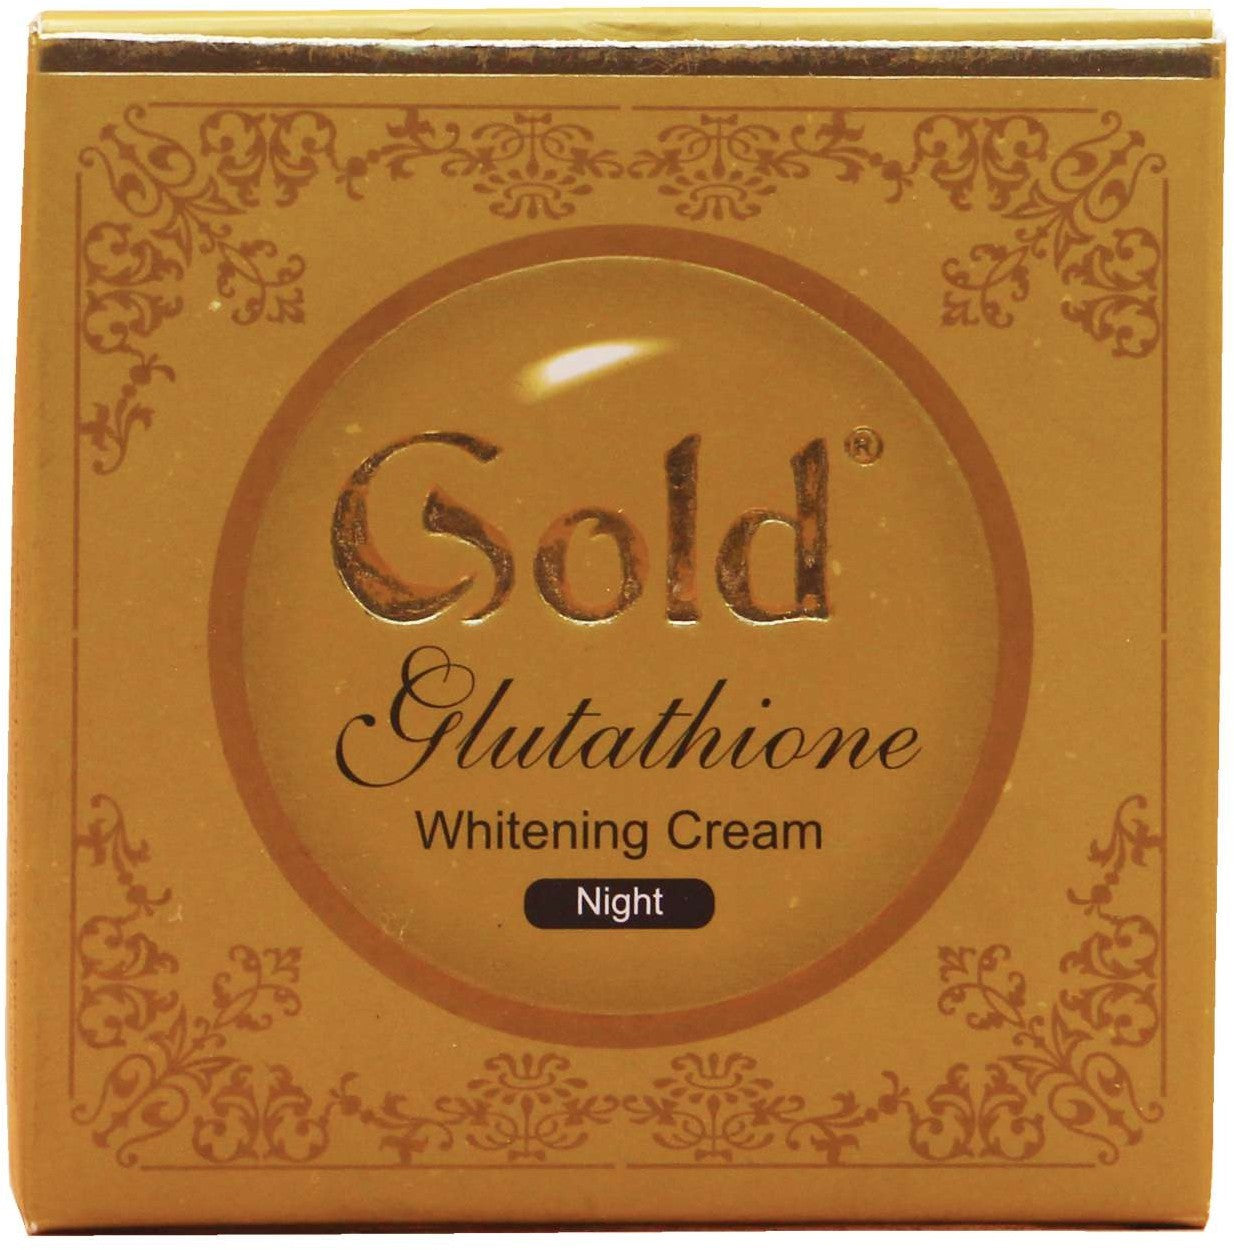 Gold Glutathione Whitening Cream Night 15g